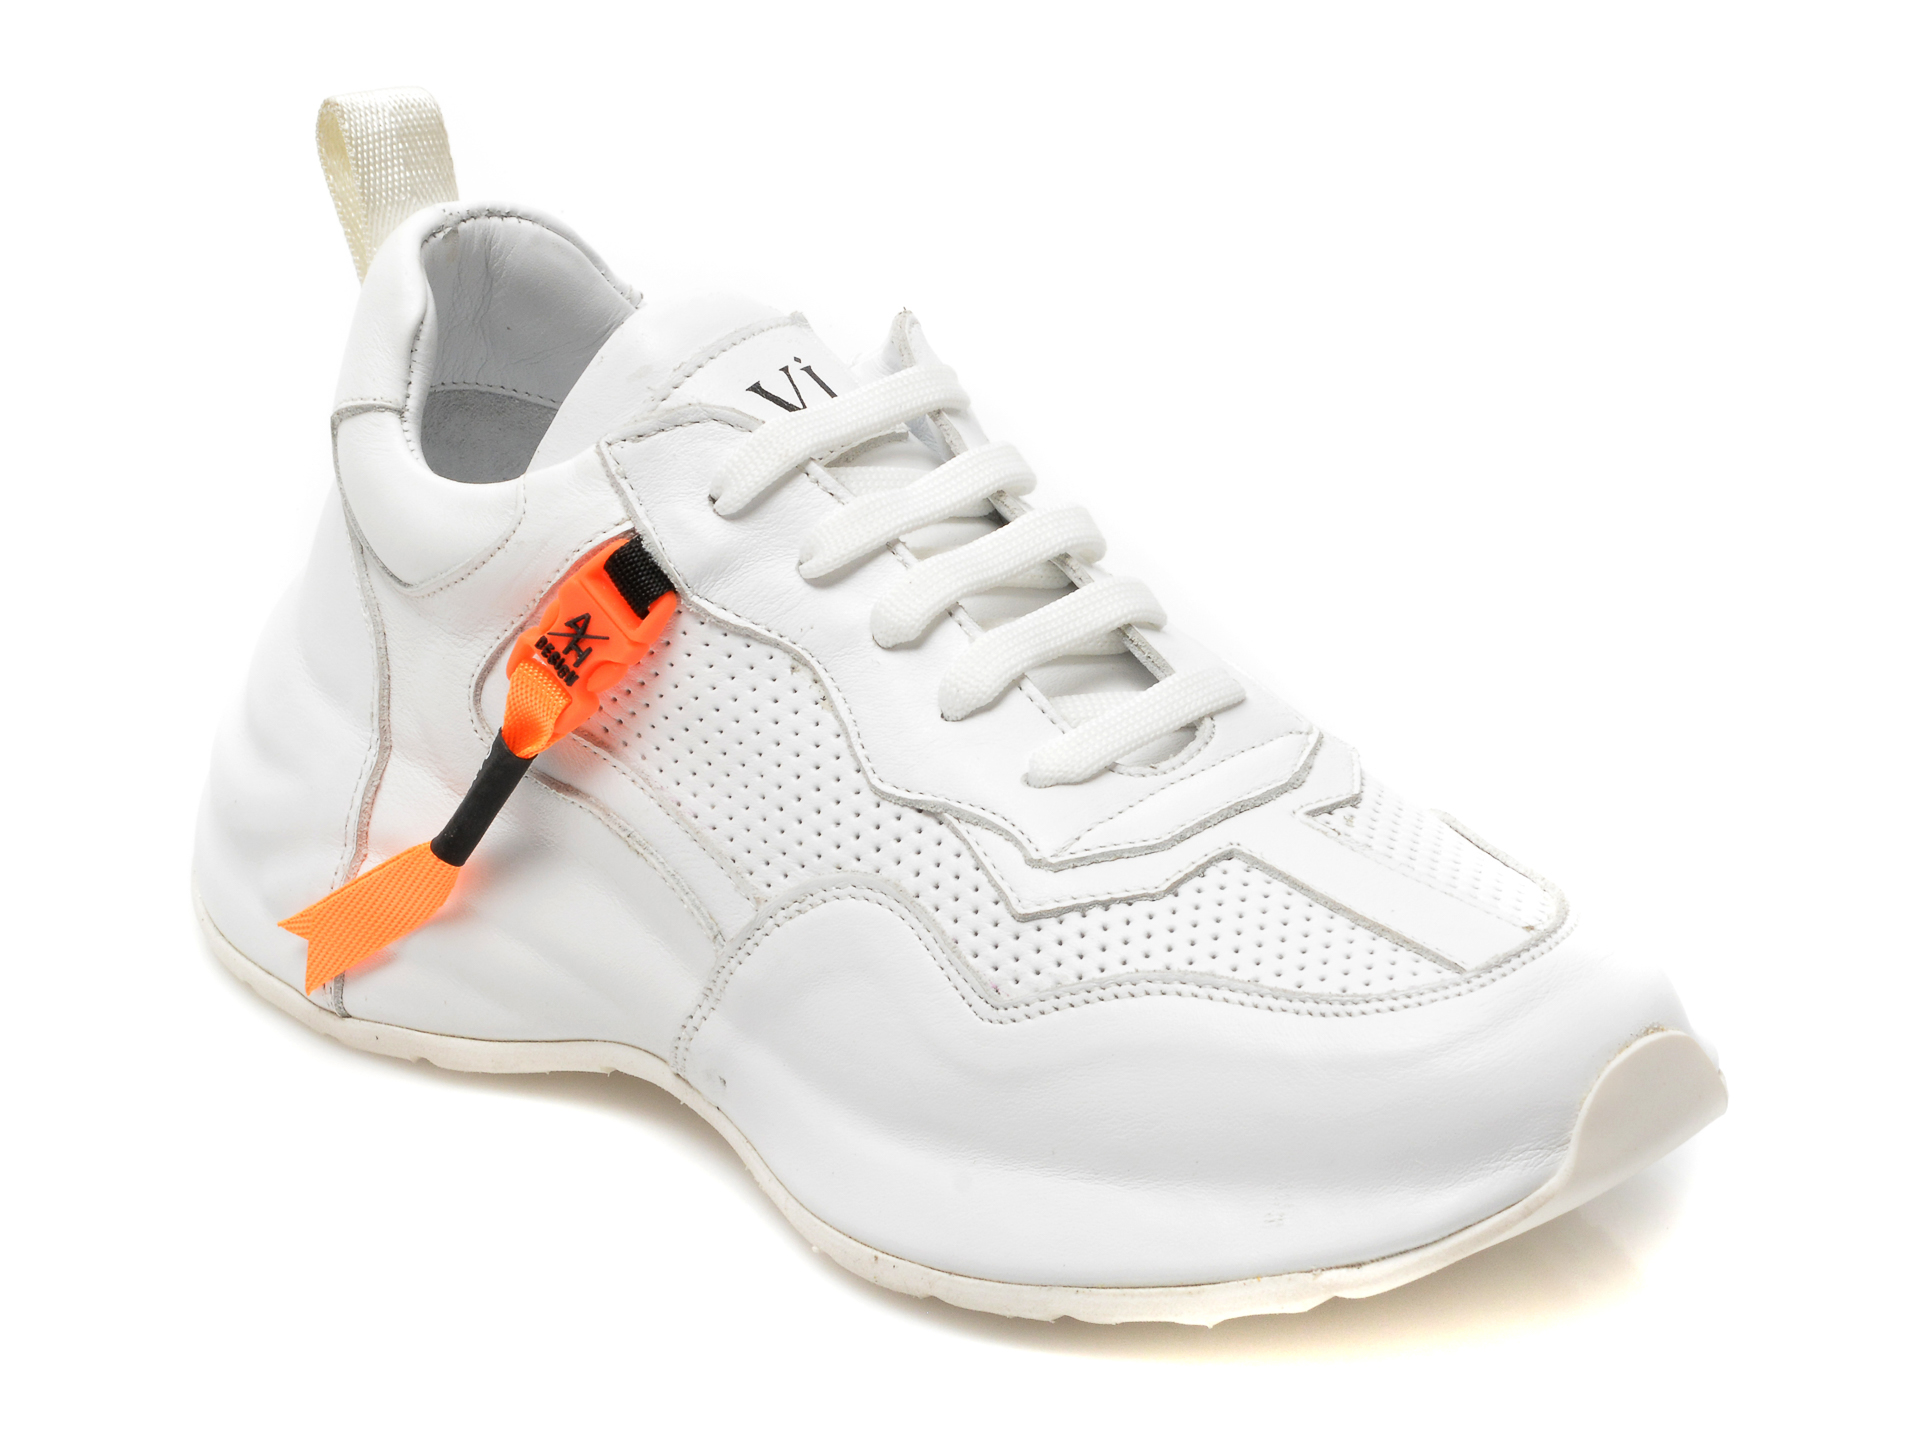 Pantofi sport ILVI albi, 192, din piele naturala /femei/pantofi